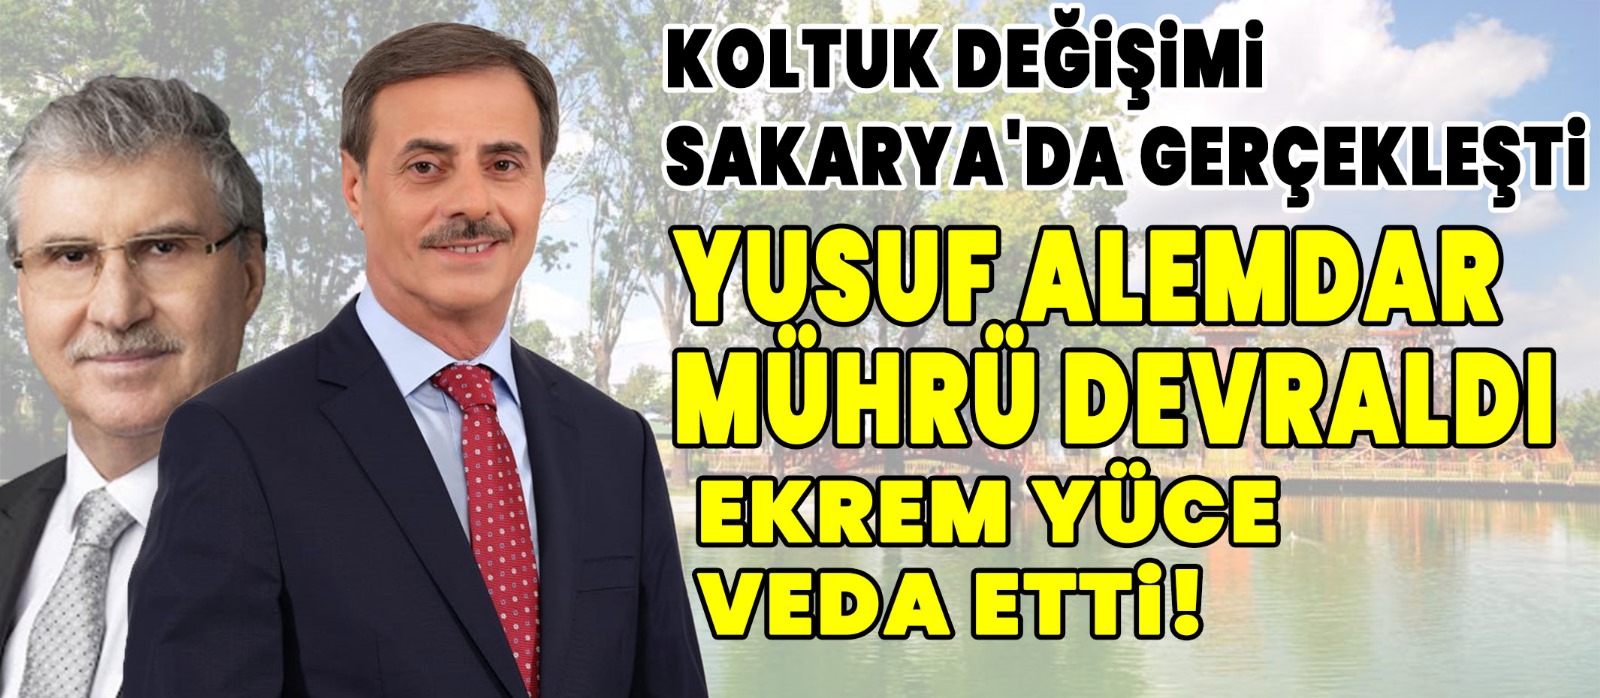 Koltuk Değişimi Sakarya'da Gerçekleşti Yusuf Alemdar Mührü Devraldı, Ekrem Yüce Veda Etti!